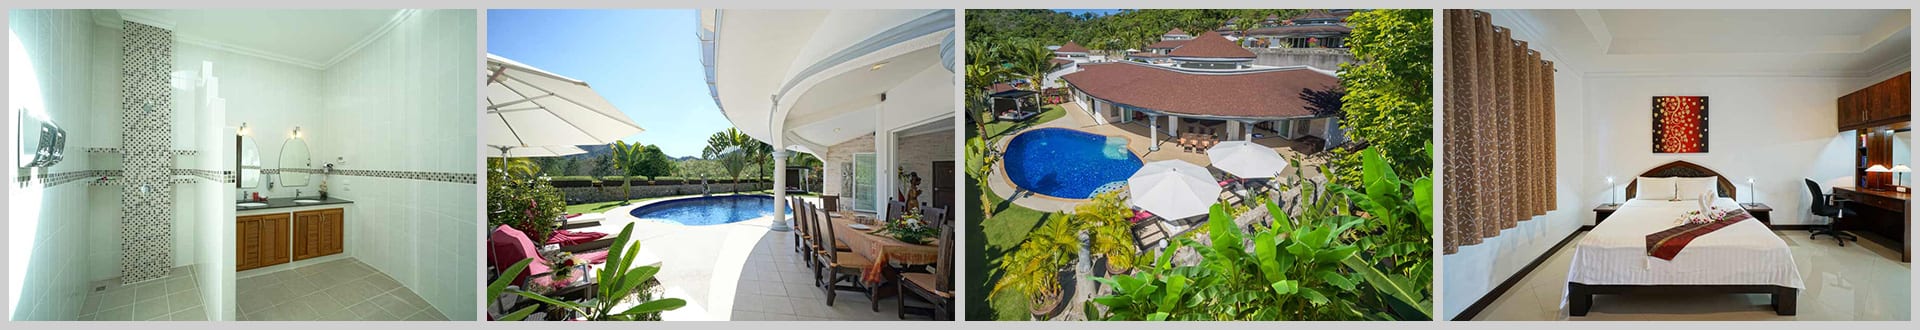 Eden Luxury Pool Villa Phuket